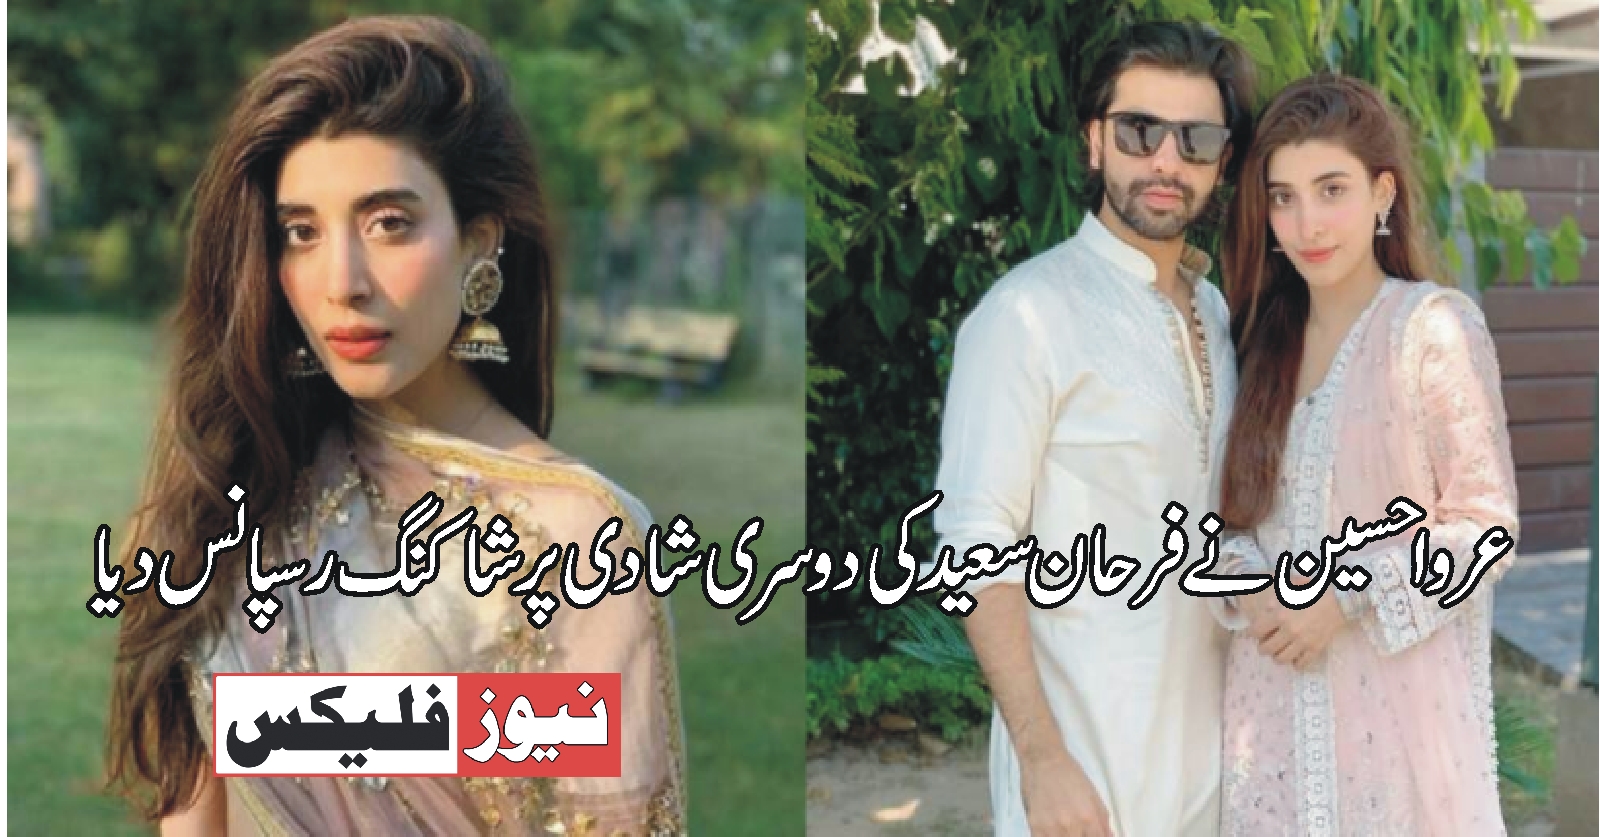 عروا حسین نے فرحان سعید کی دوسری شادی کے بارے میں ایک شاکنگ رسپانس دیا